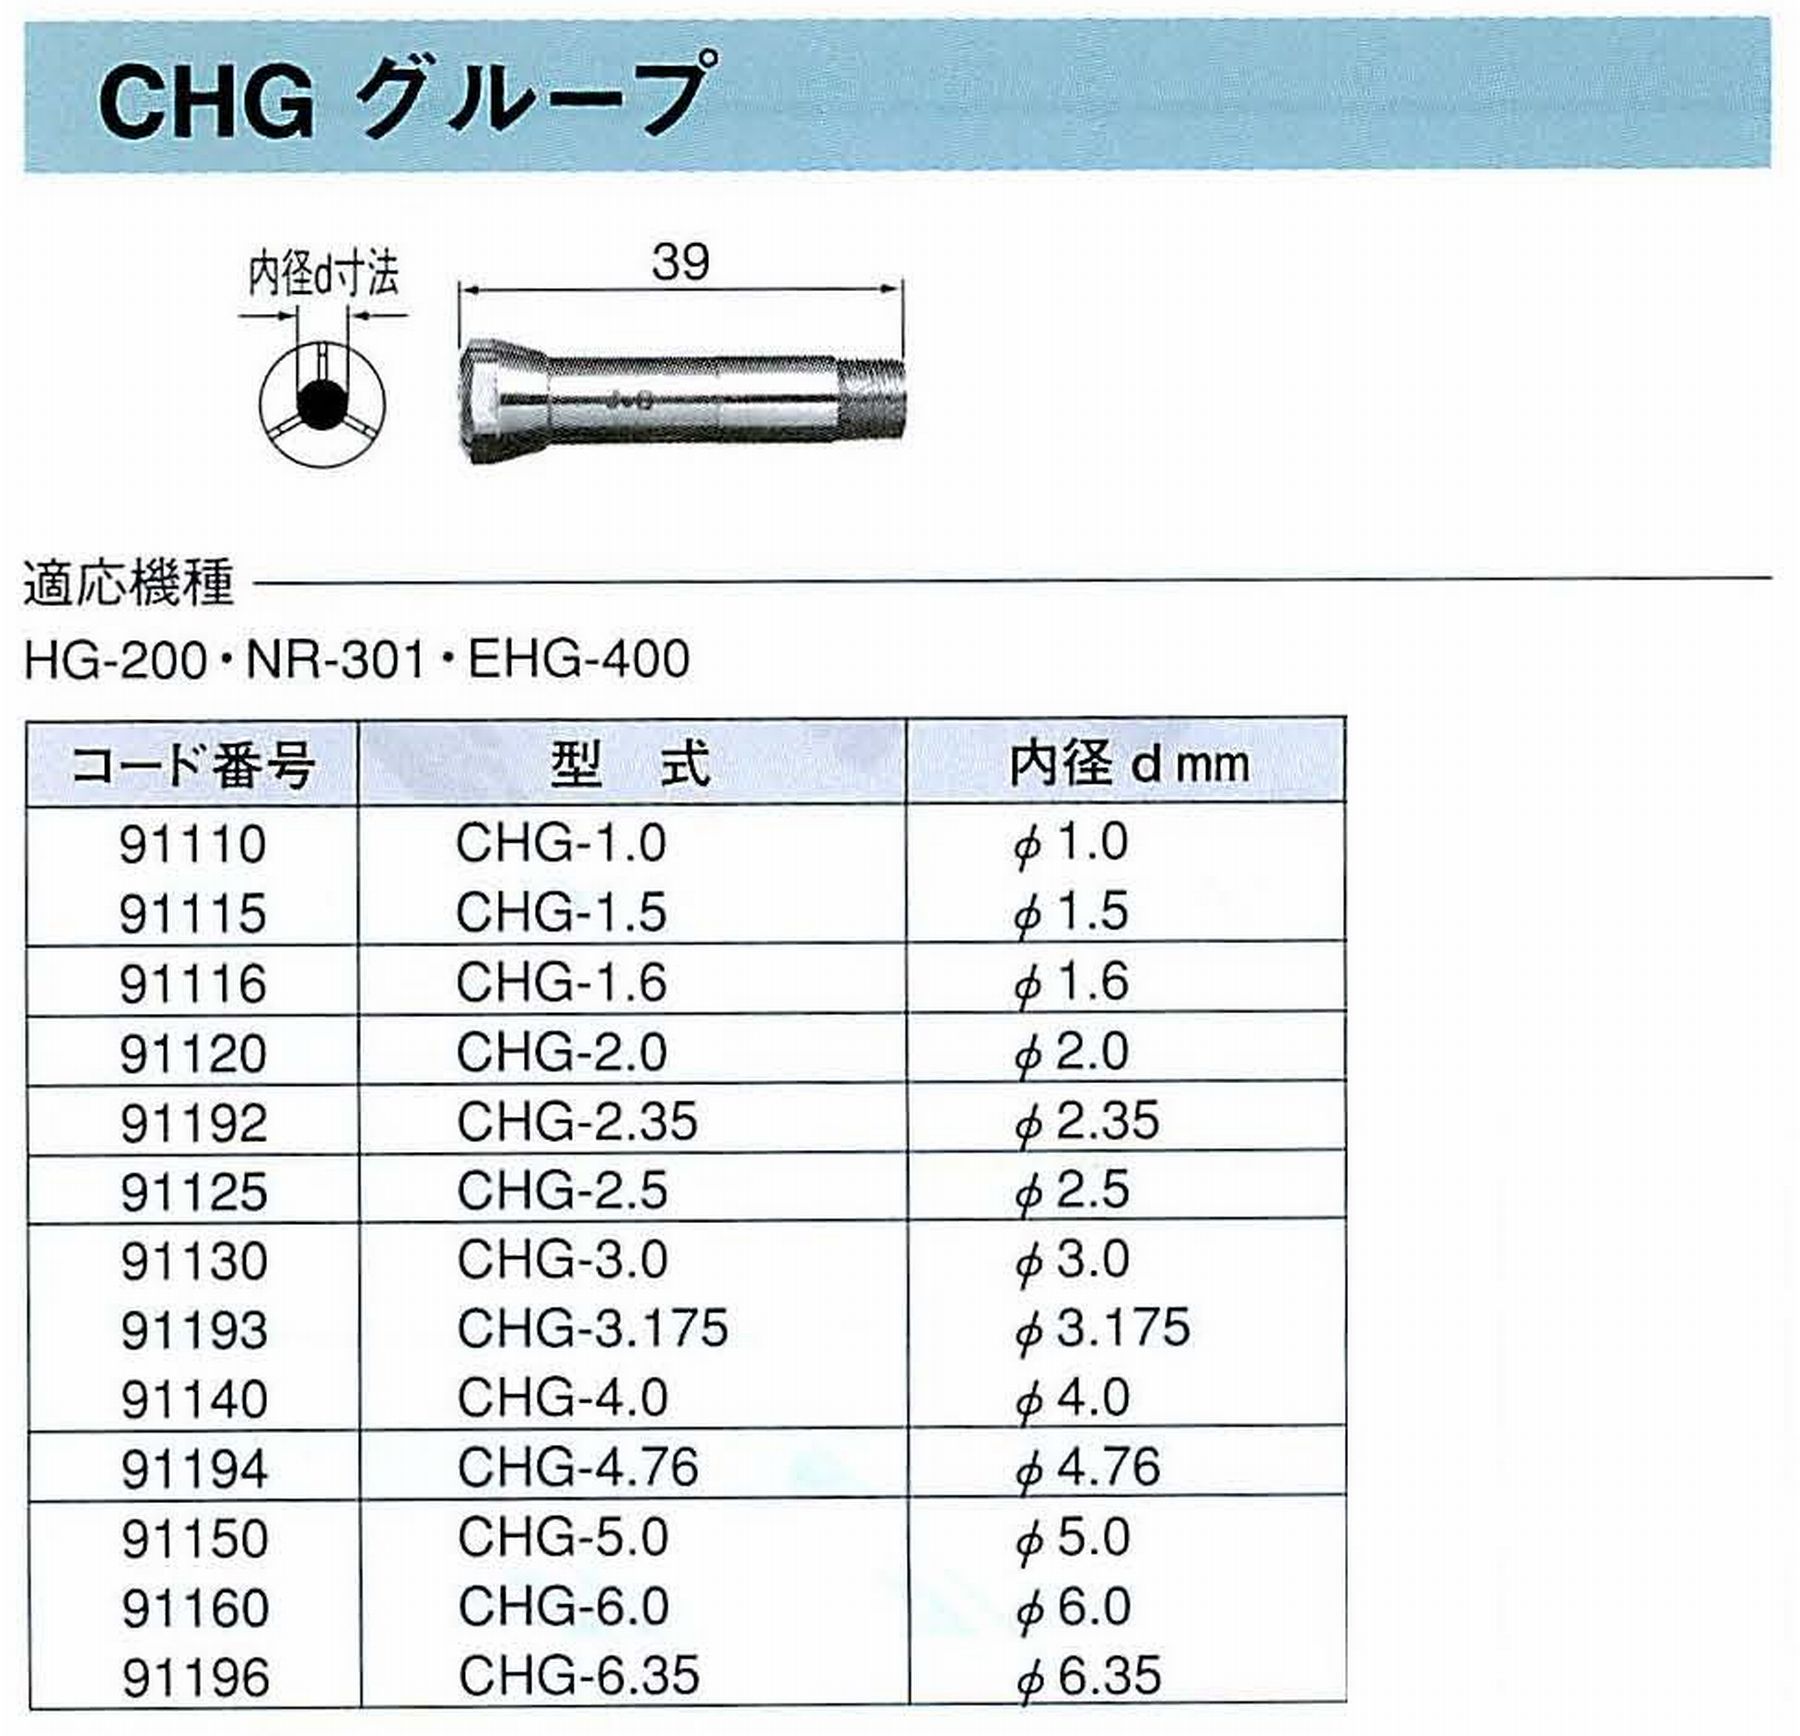 ナカニシ/NAKANISHI コレットチャック コード番号 91196 型式 CHG-6.35 内径:Φ6.35